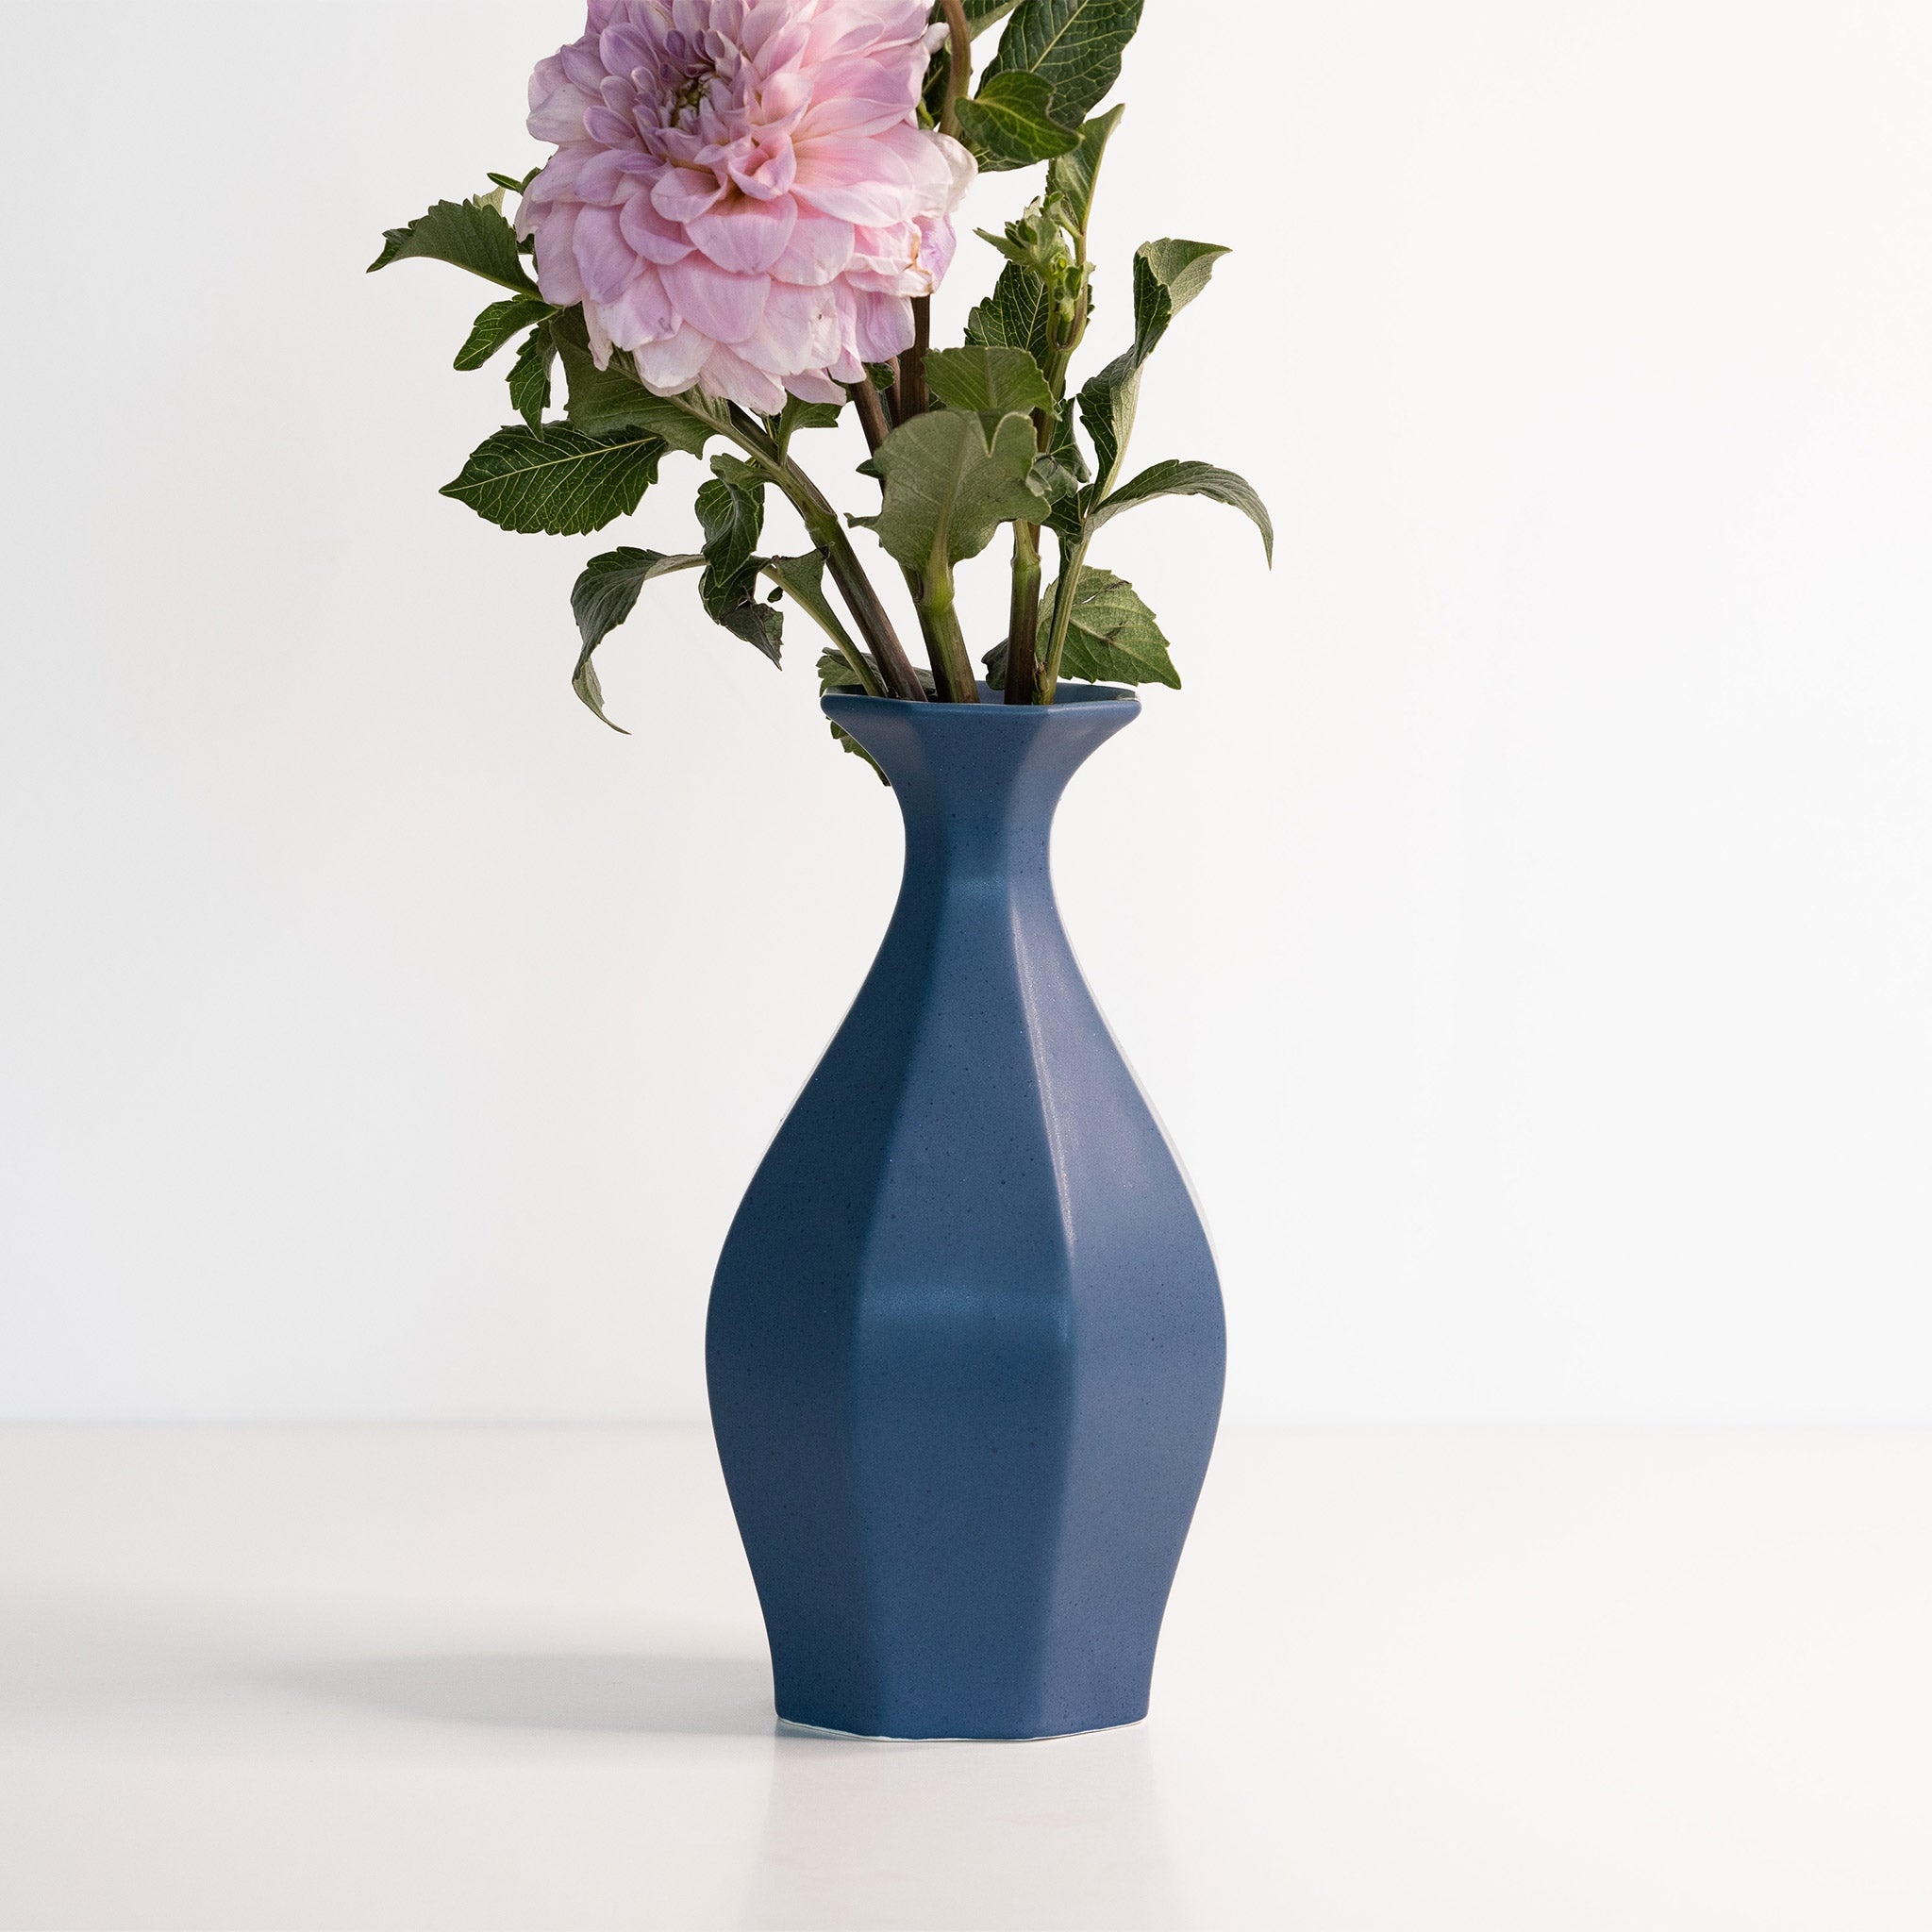 Flower Vase for Home Decor Flower Pot for Table Top Handmade